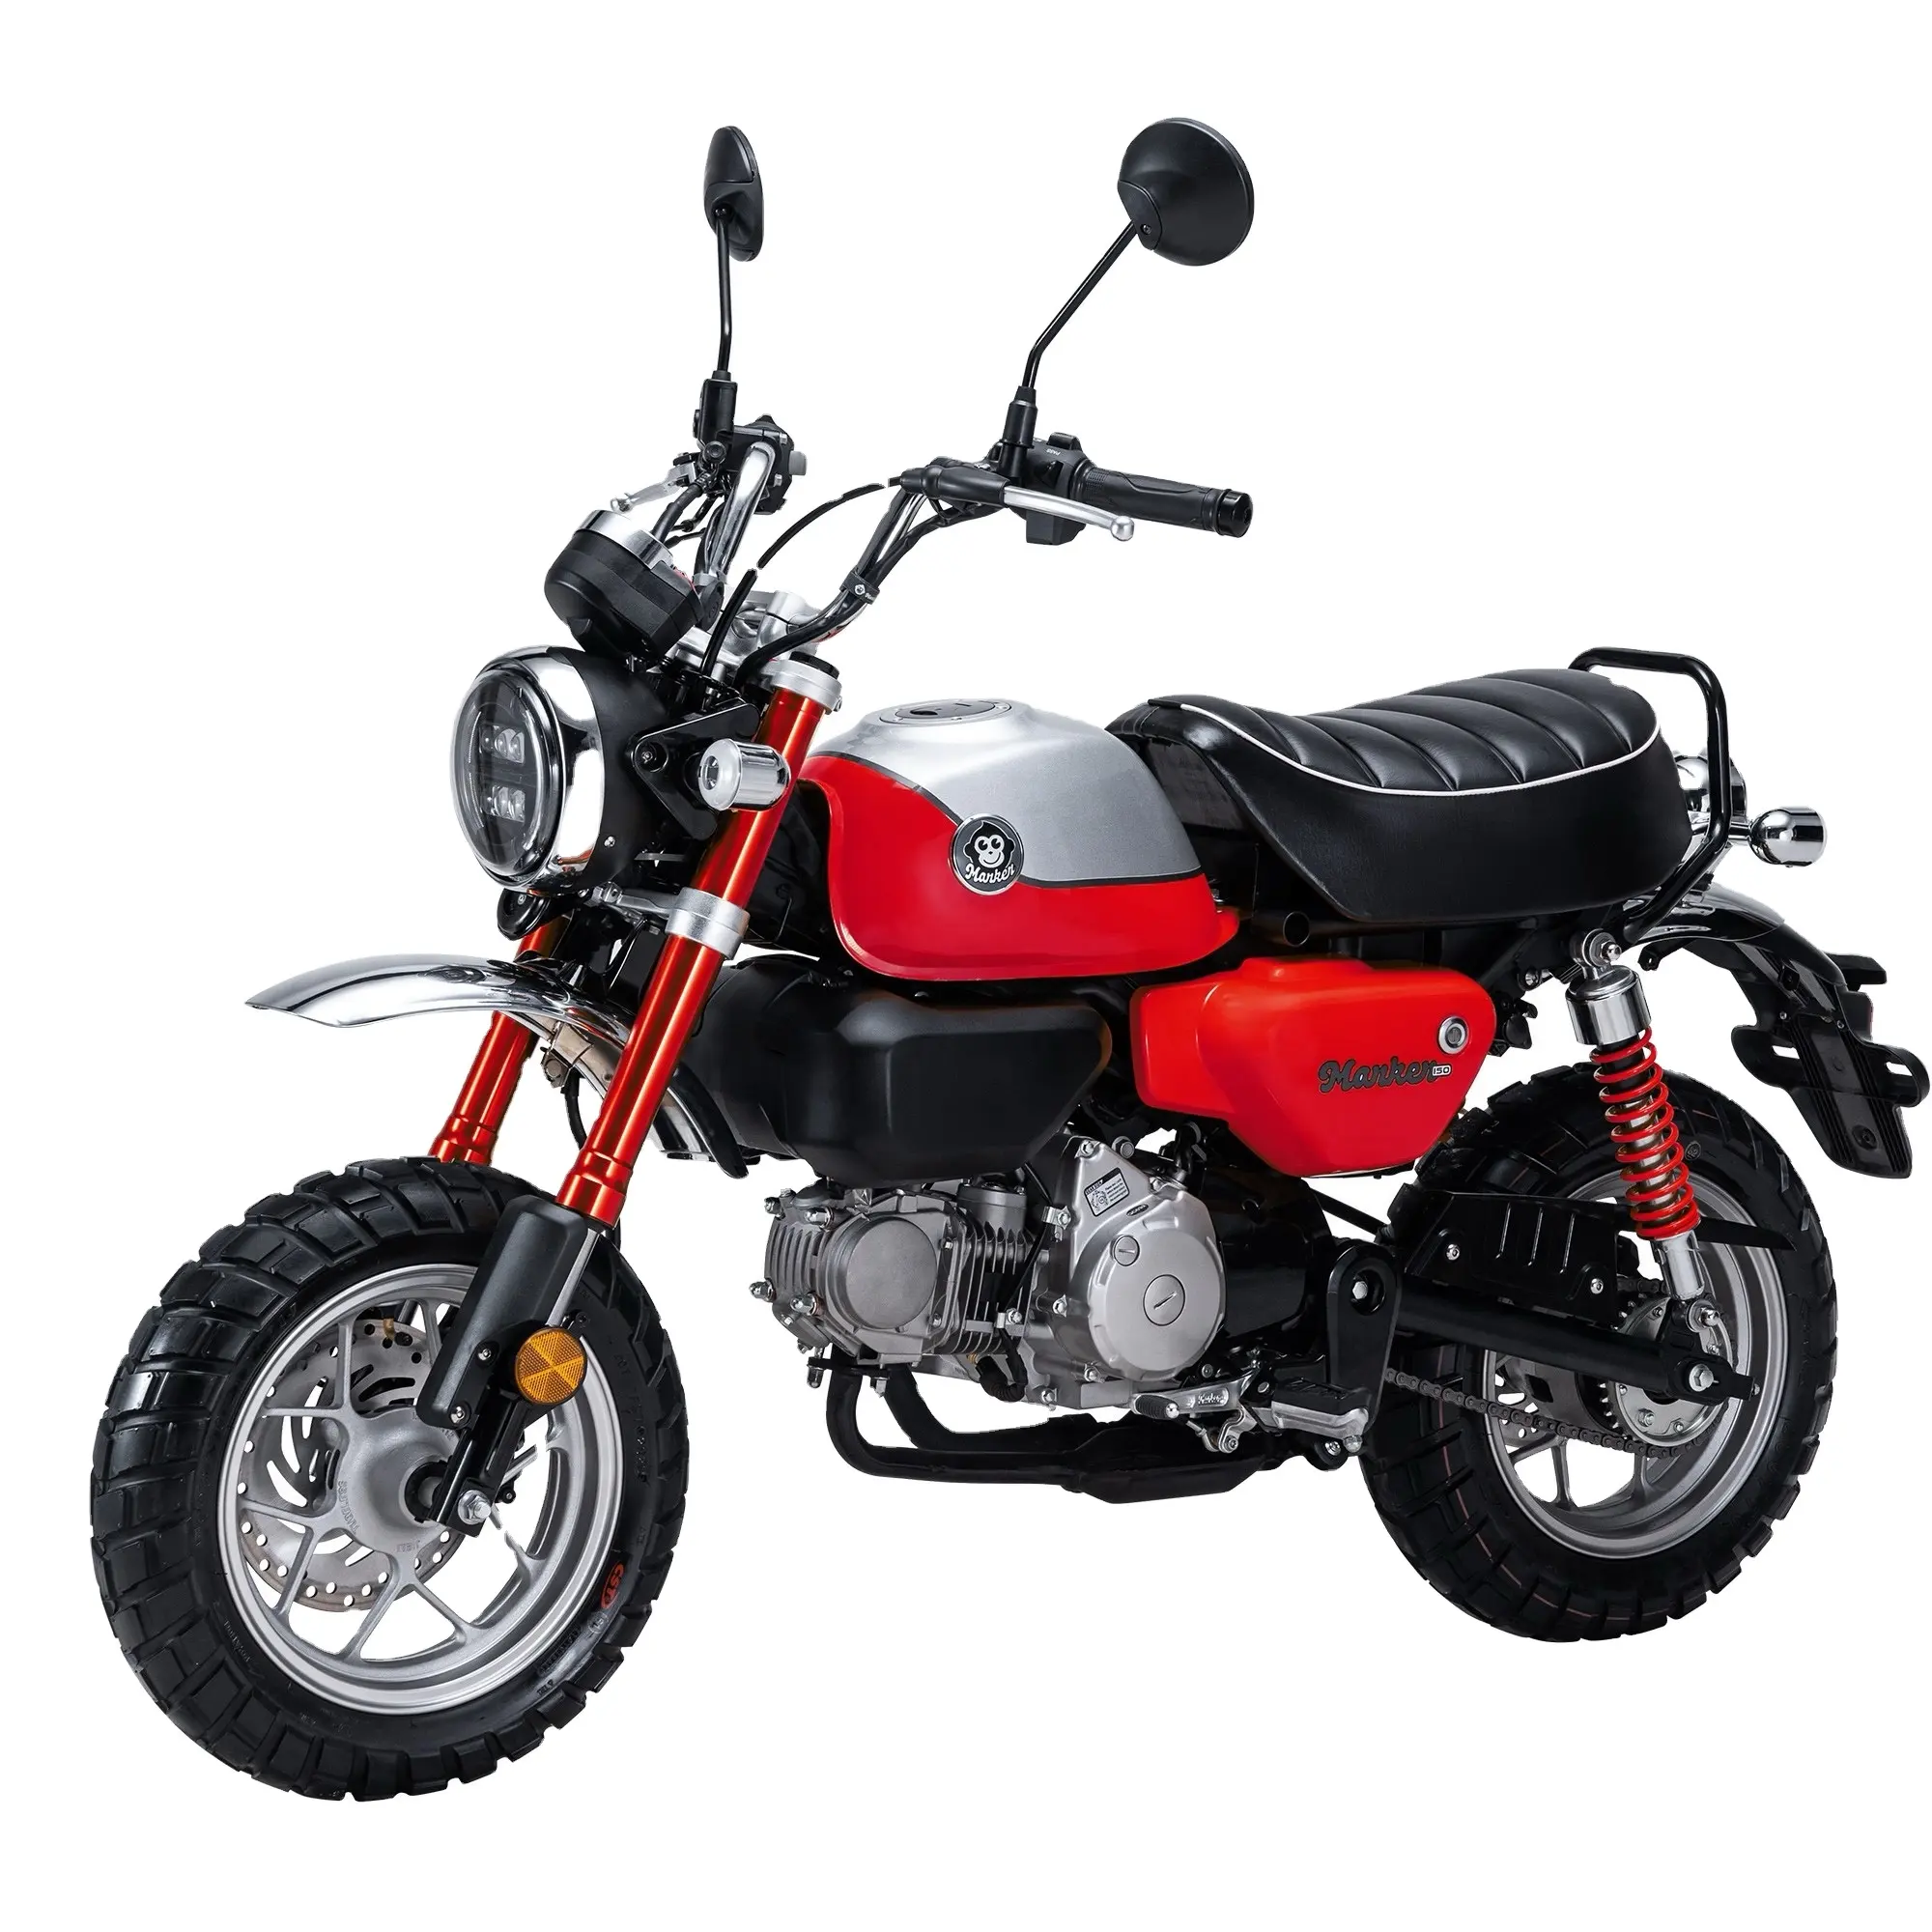 Mini moto 150cc de sport de haute qualité, très vendue, tout terrain classique, Dirt Bike Scooter